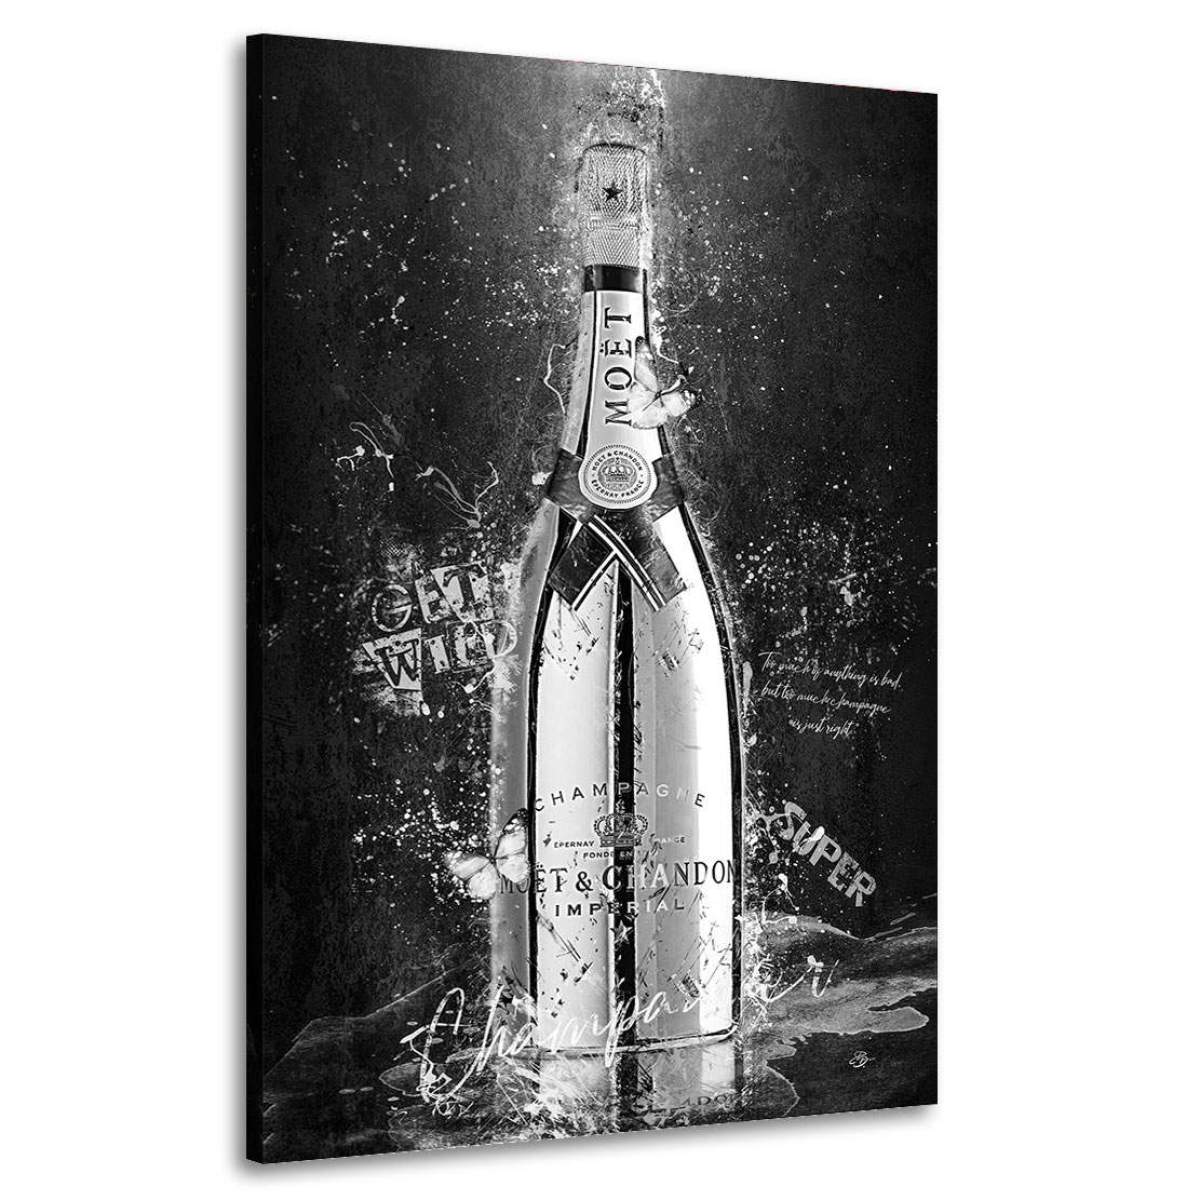 Champagner Aluminium Wandbild